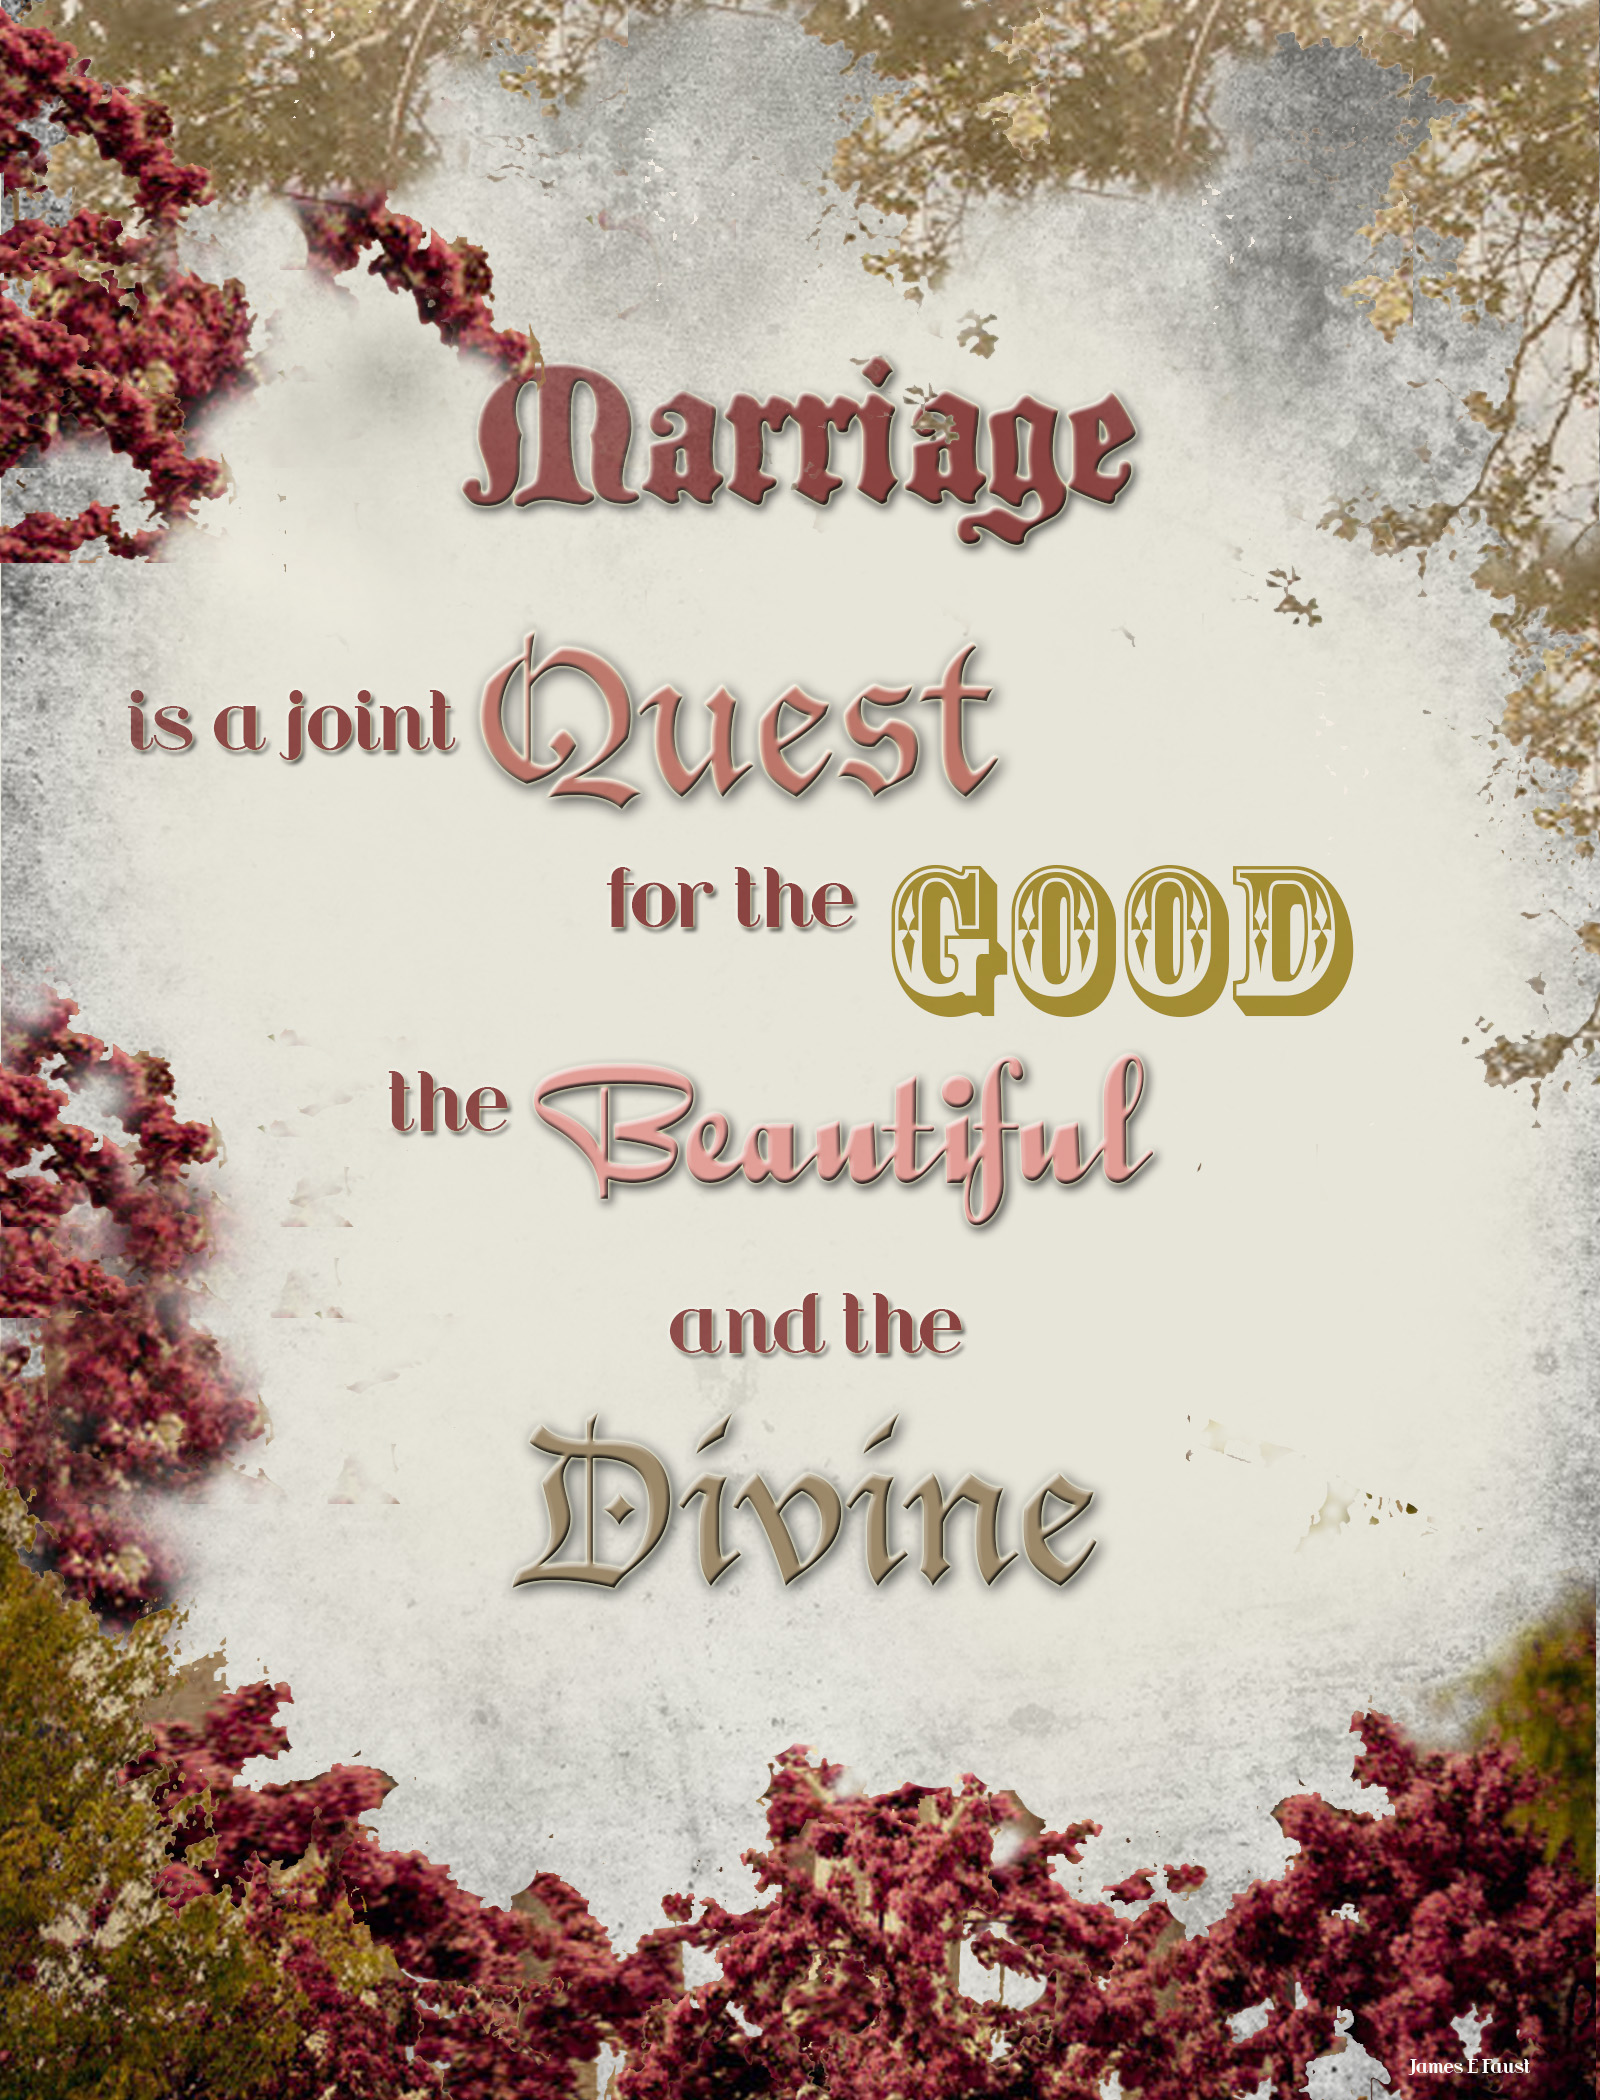  Beautiful  Marriage  Quotes  QuotesGram